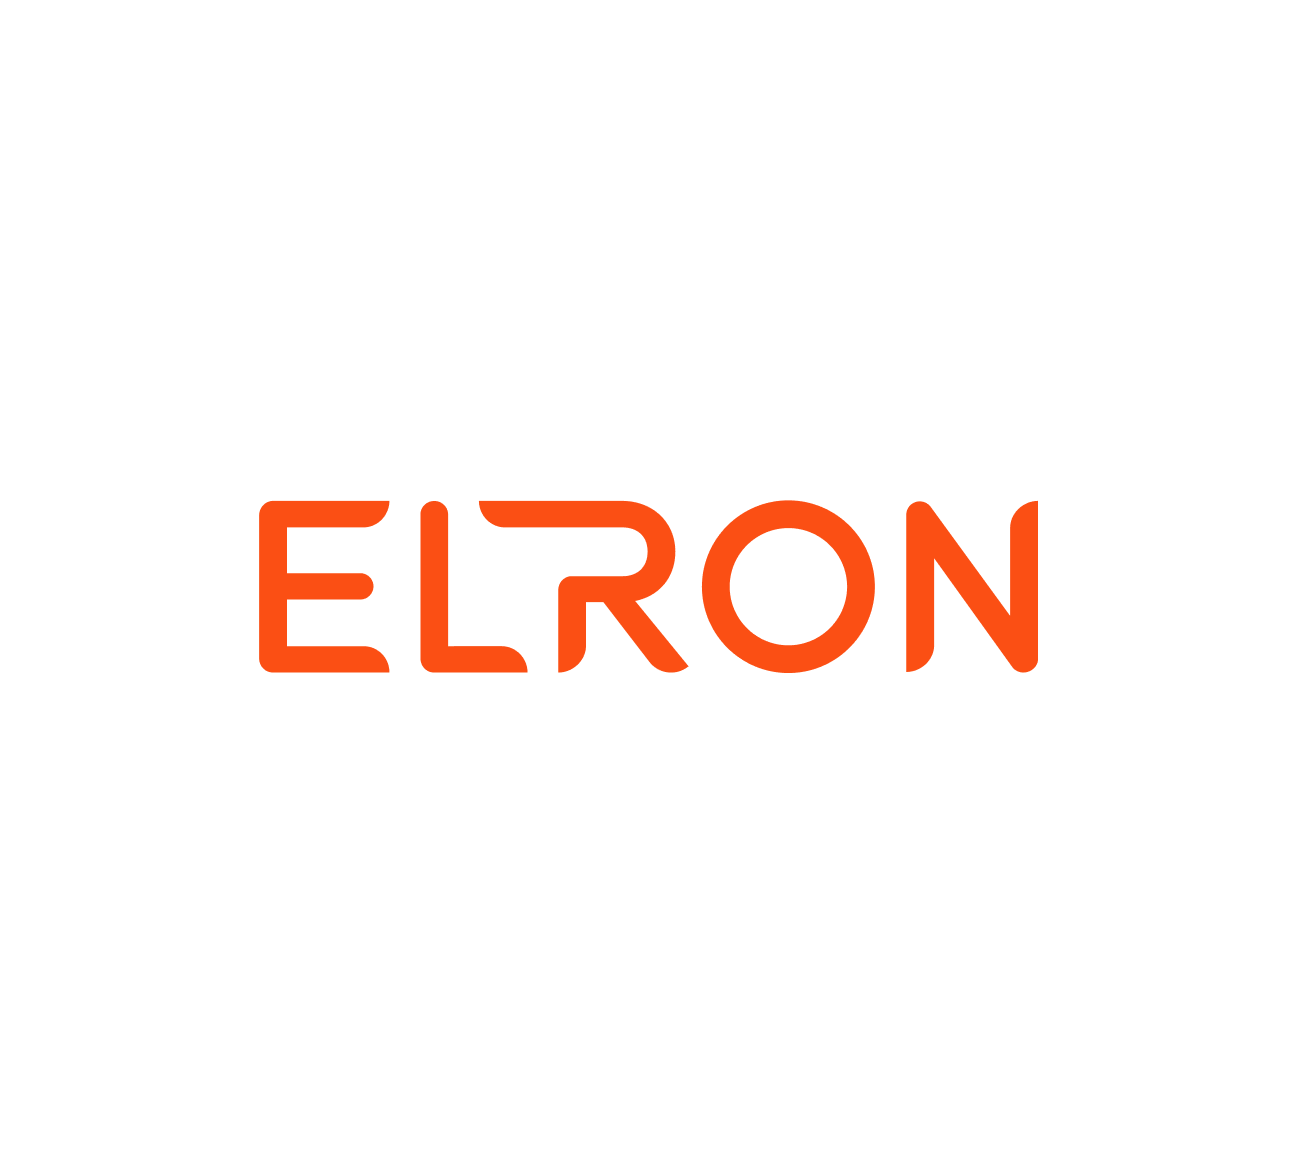 Elron